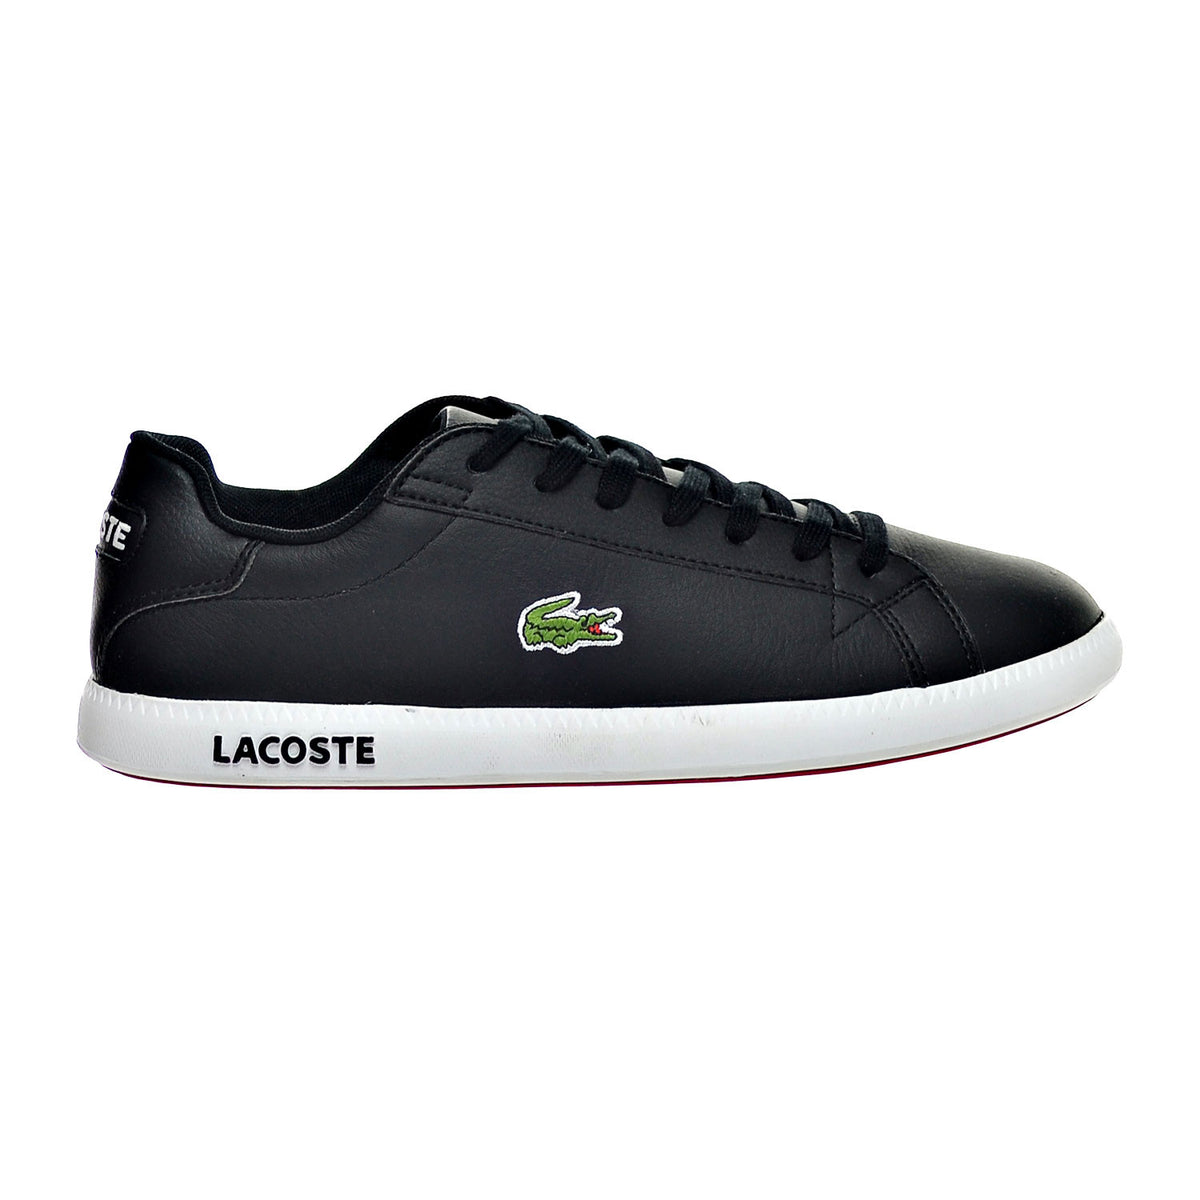 hoesten Er is behoefte aan Professor Lacoste Graduate LCR3 SPM Leather/Synthetic Men's Shoe Black/White